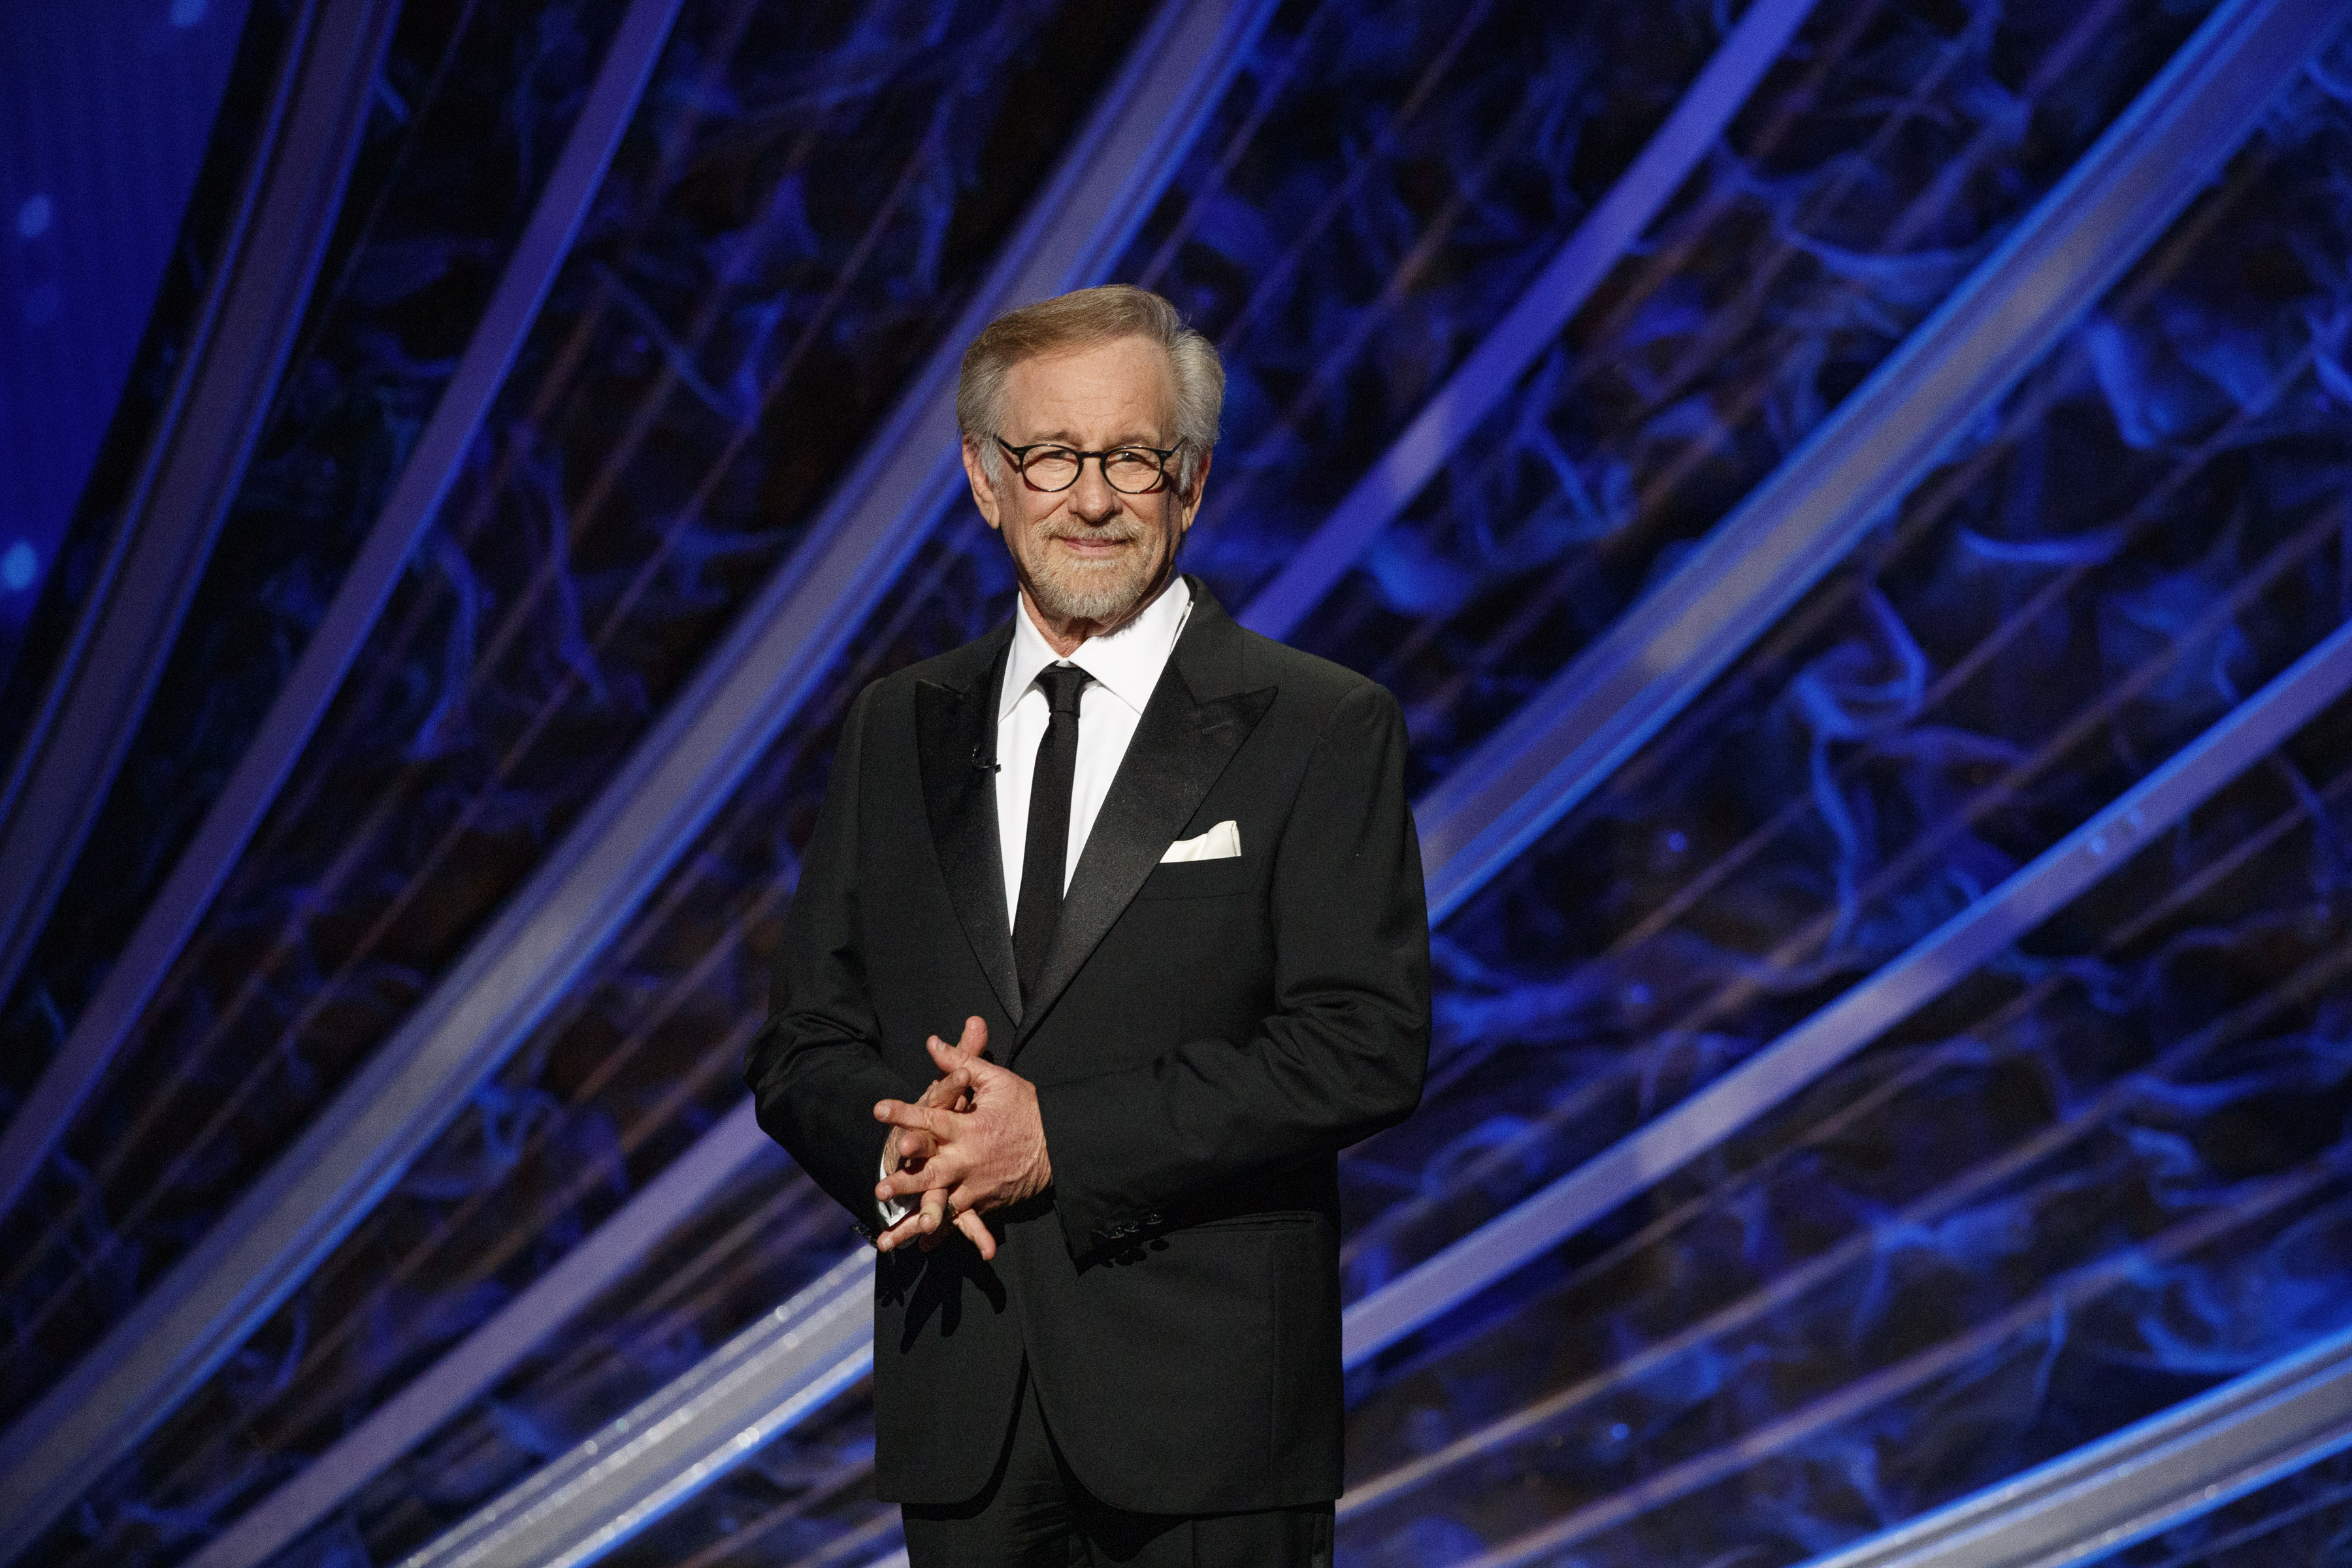 Steven Spielberg speaking onstage